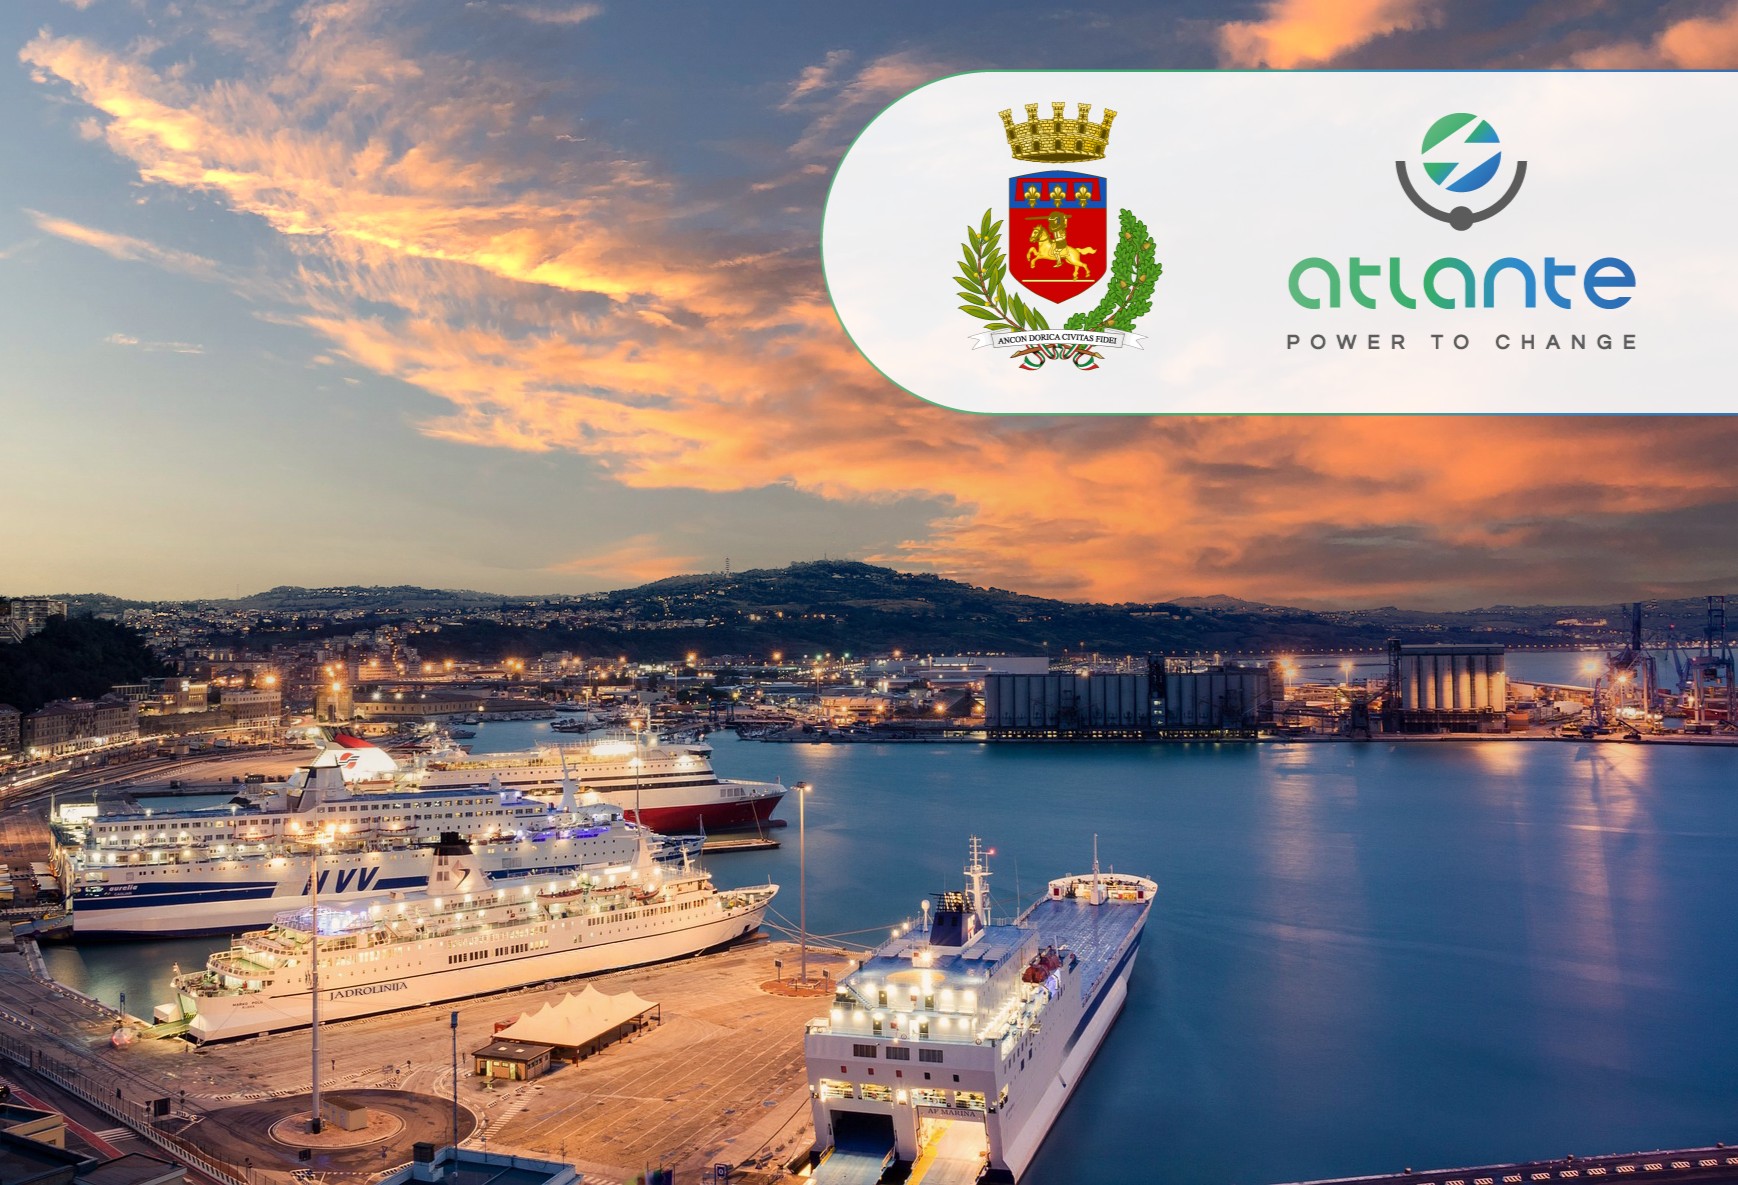 Ancona sostenibile: 52 punti di ricarica per veicoli elettrici grazie ad Atlante